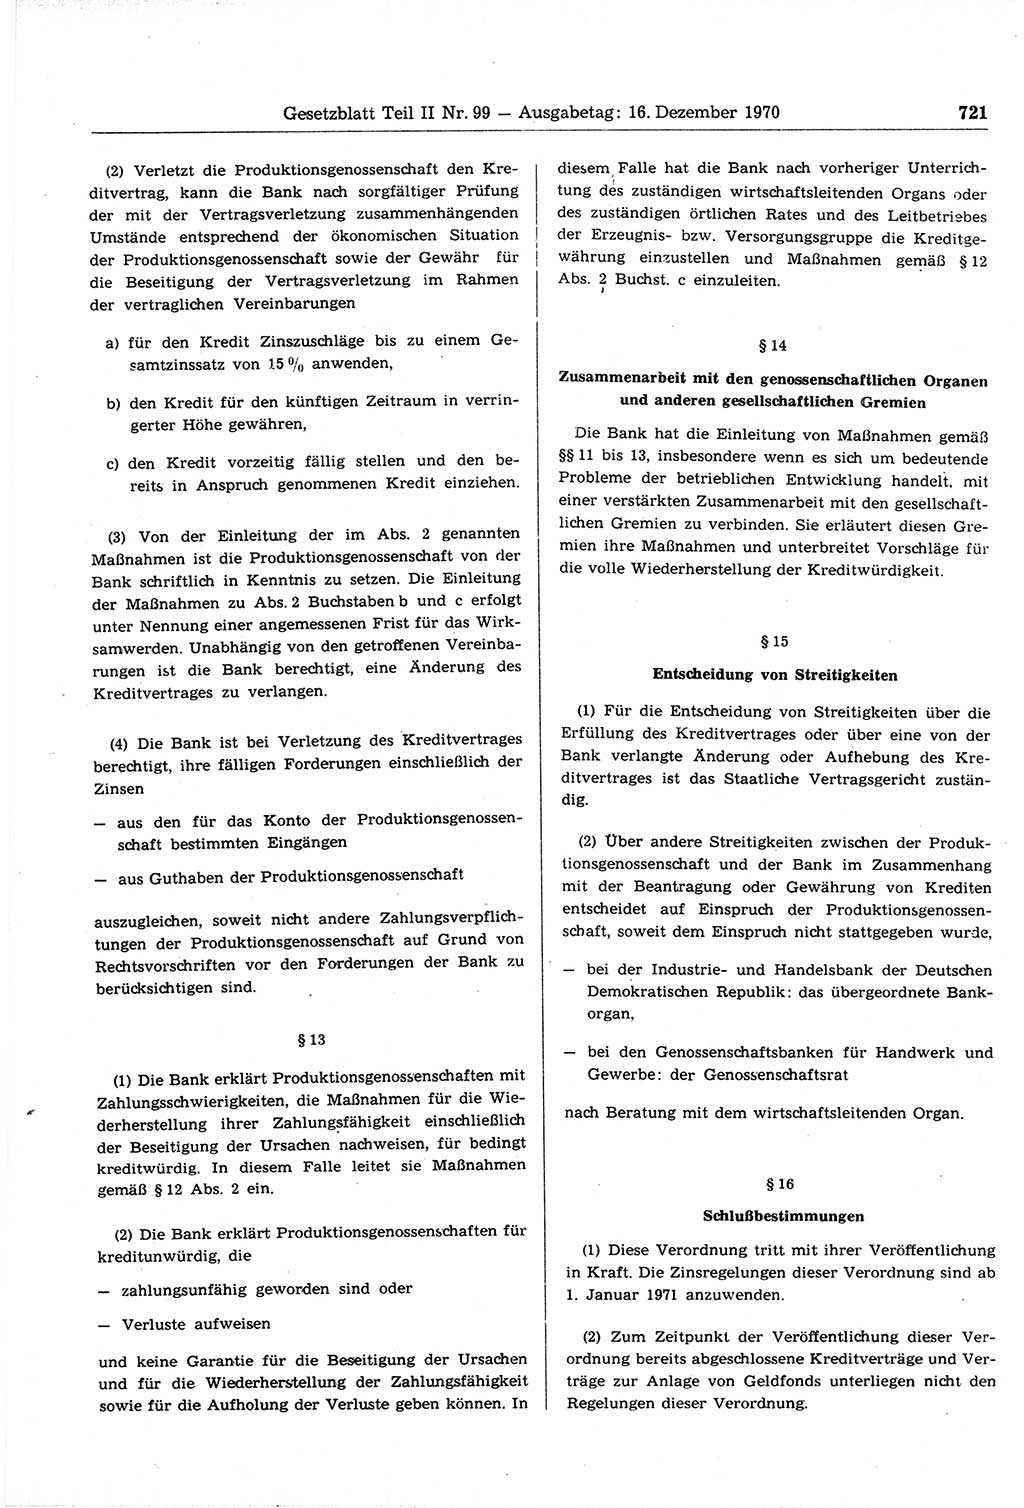 Gesetzblatt (GBl.) der Deutschen Demokratischen Republik (DDR) Teil ⅠⅠ 1970, Seite 721 (GBl. DDR ⅠⅠ 1970, S. 721)